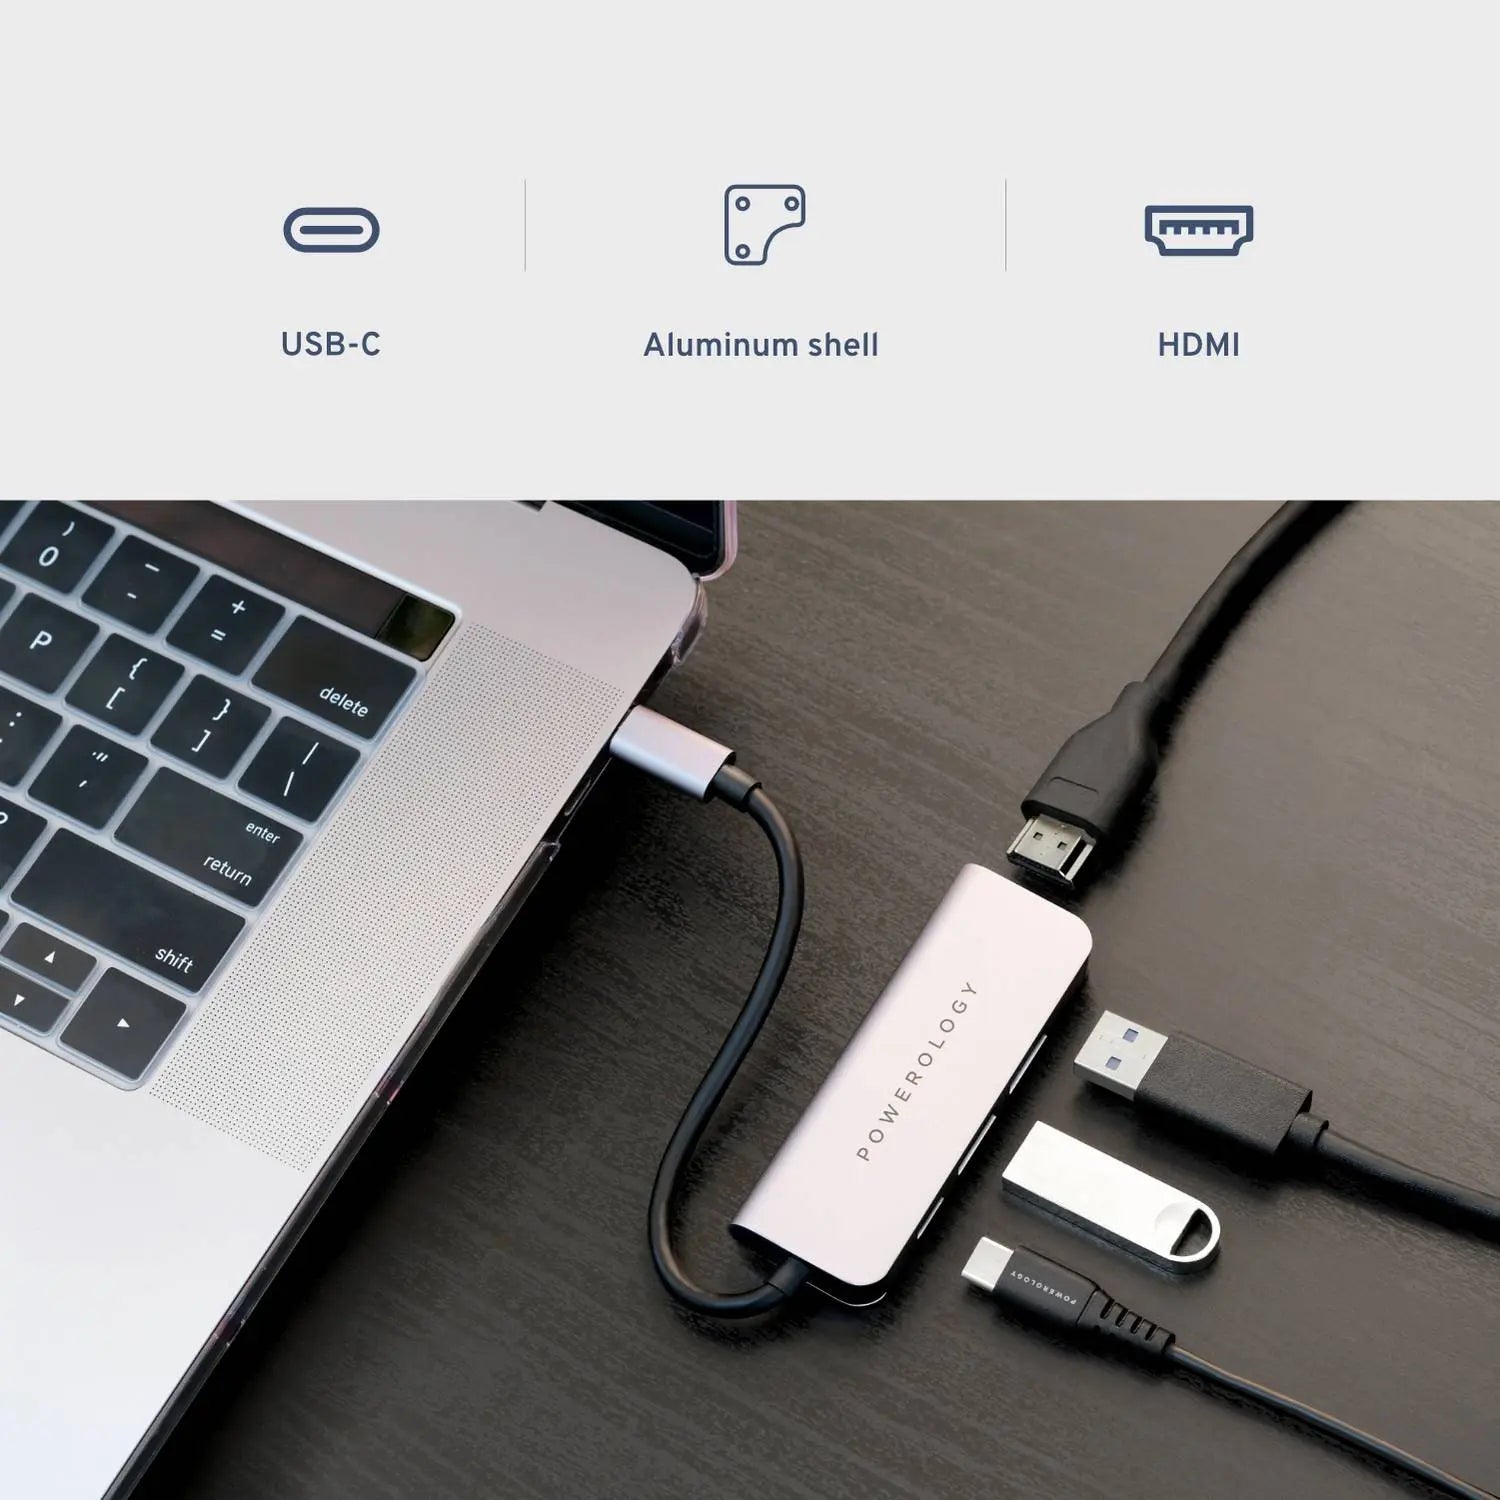 Powerology 4in1 USB-C HUB with HDMI & USB 3.0 - Grey